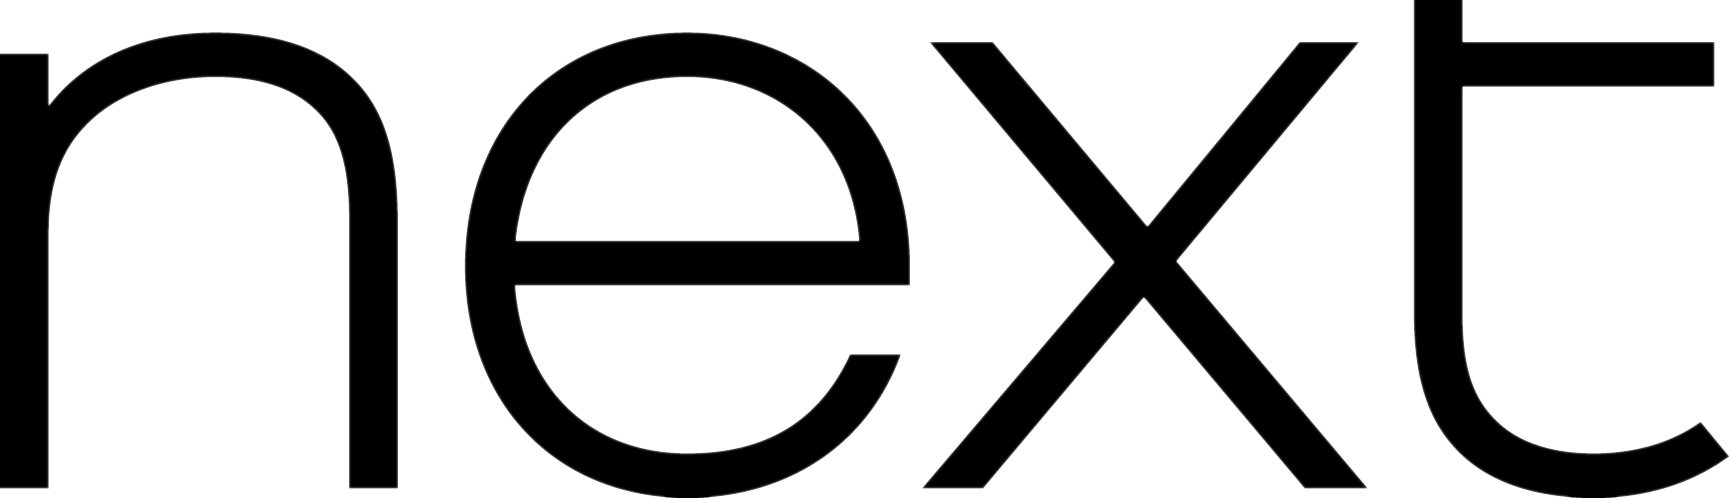 Logo-Magazinele-Next.png